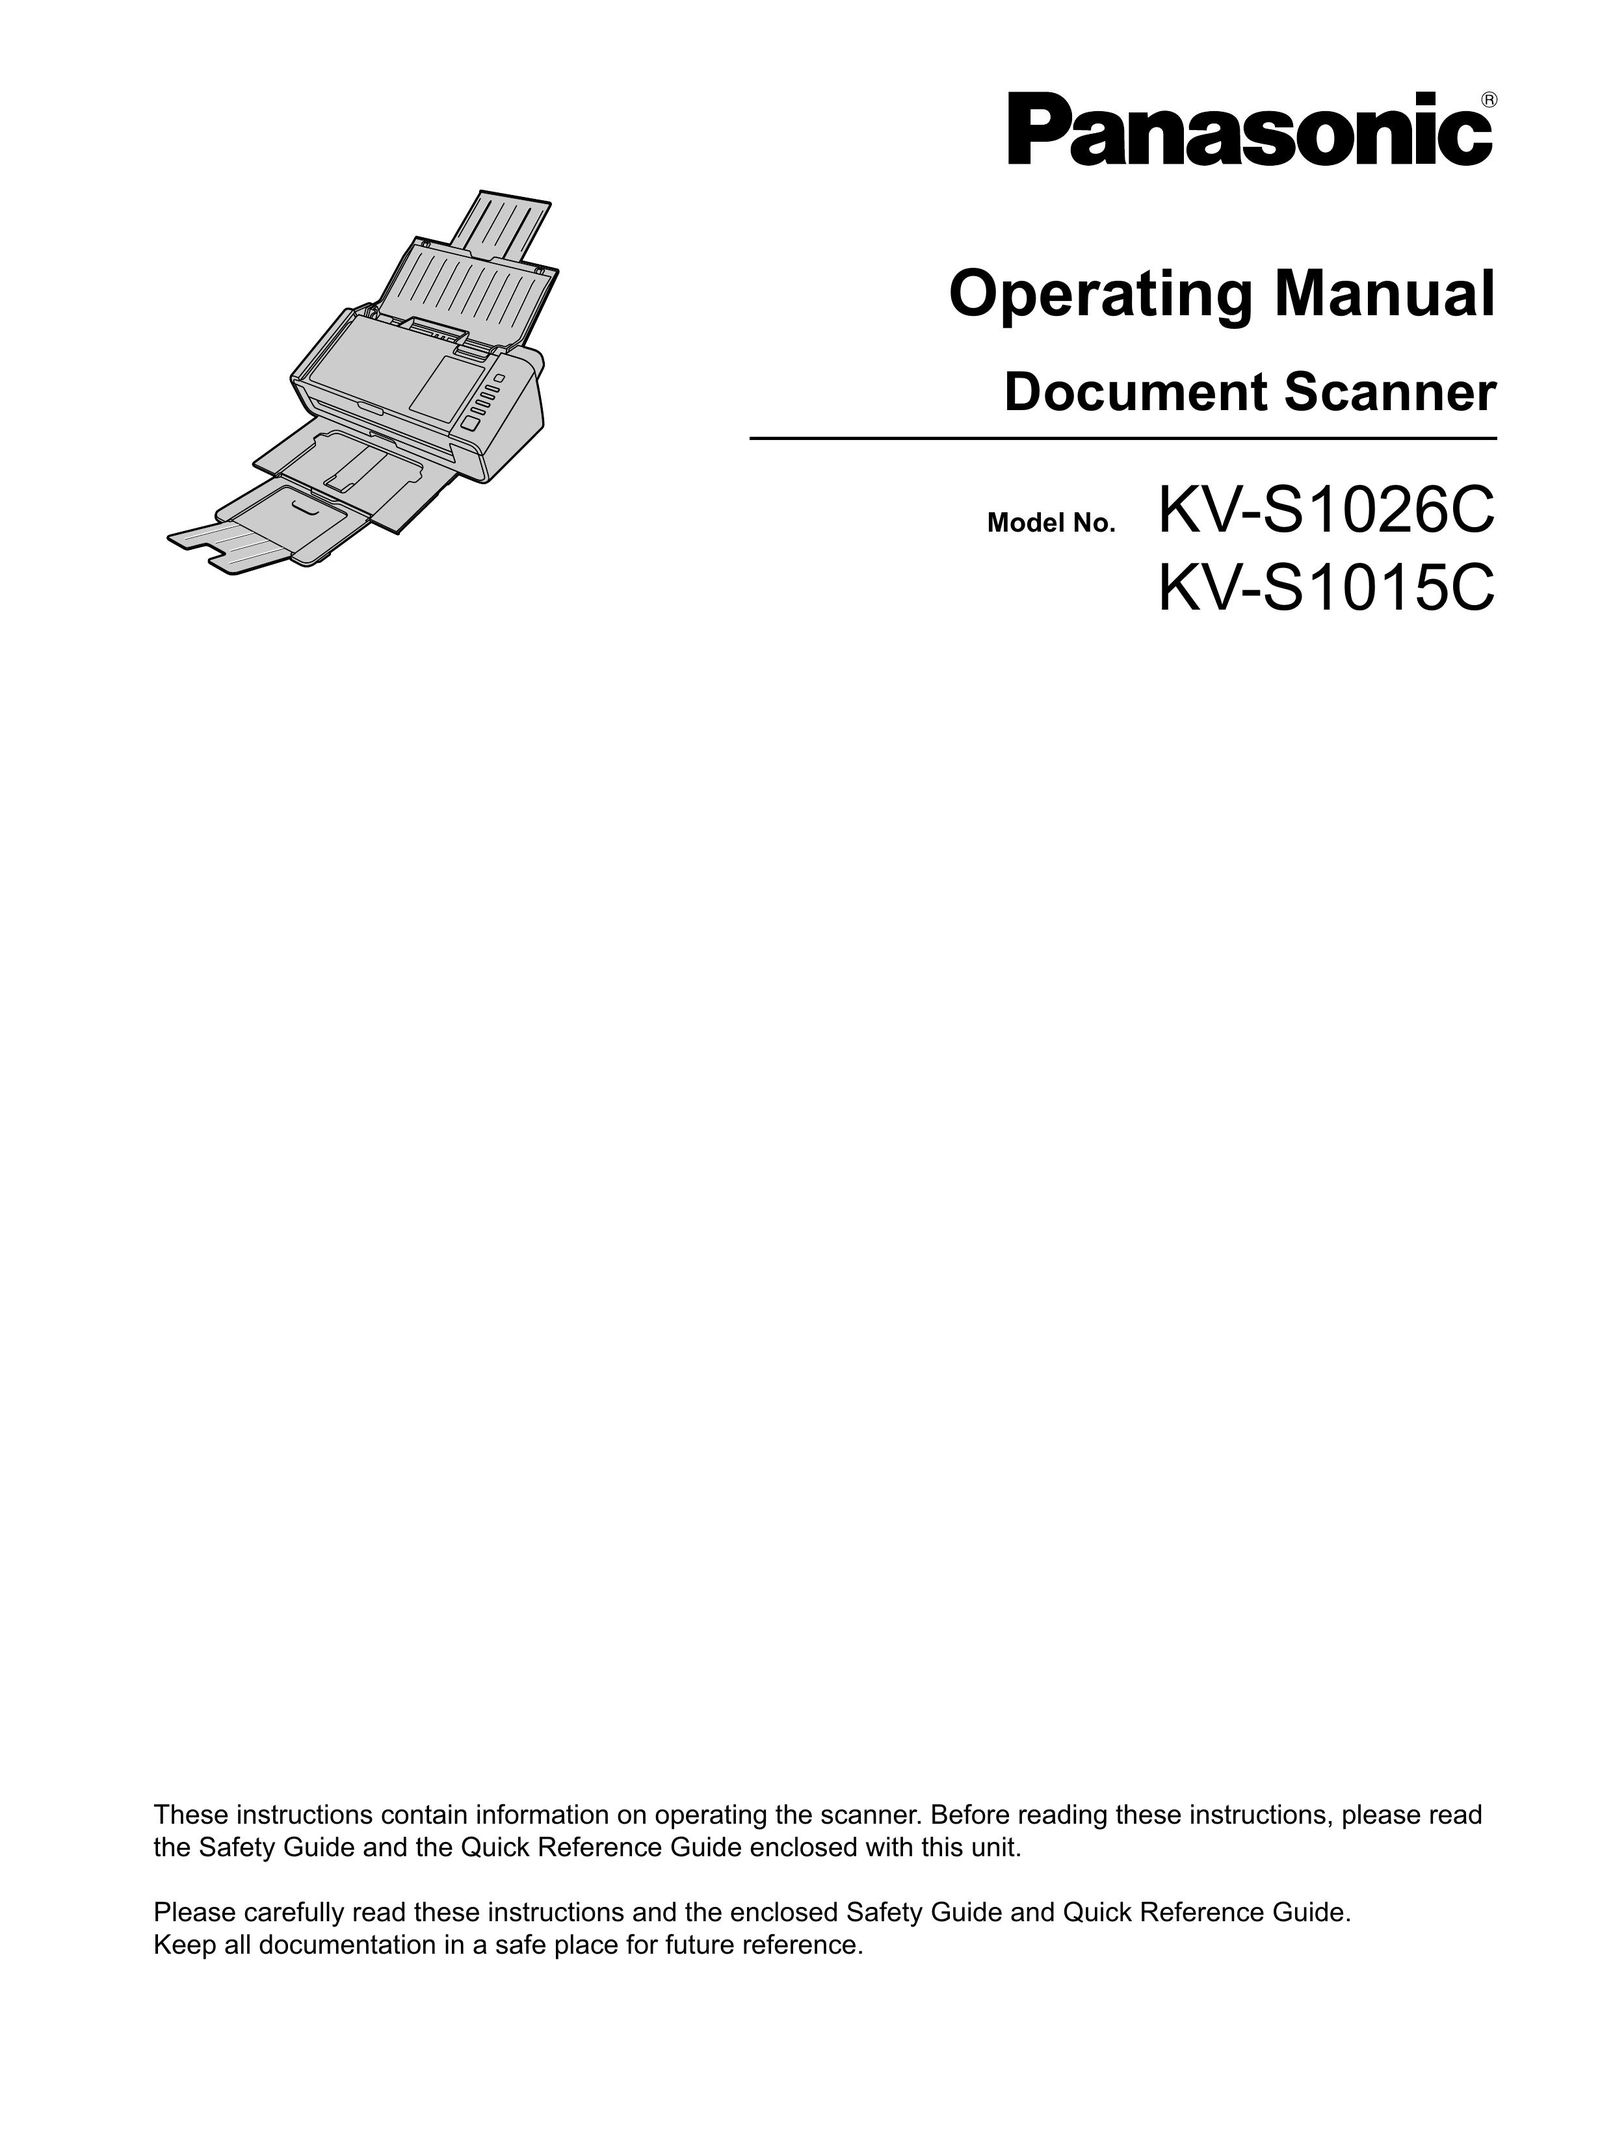 Panasonic KC-S1026C Scanner User Manual